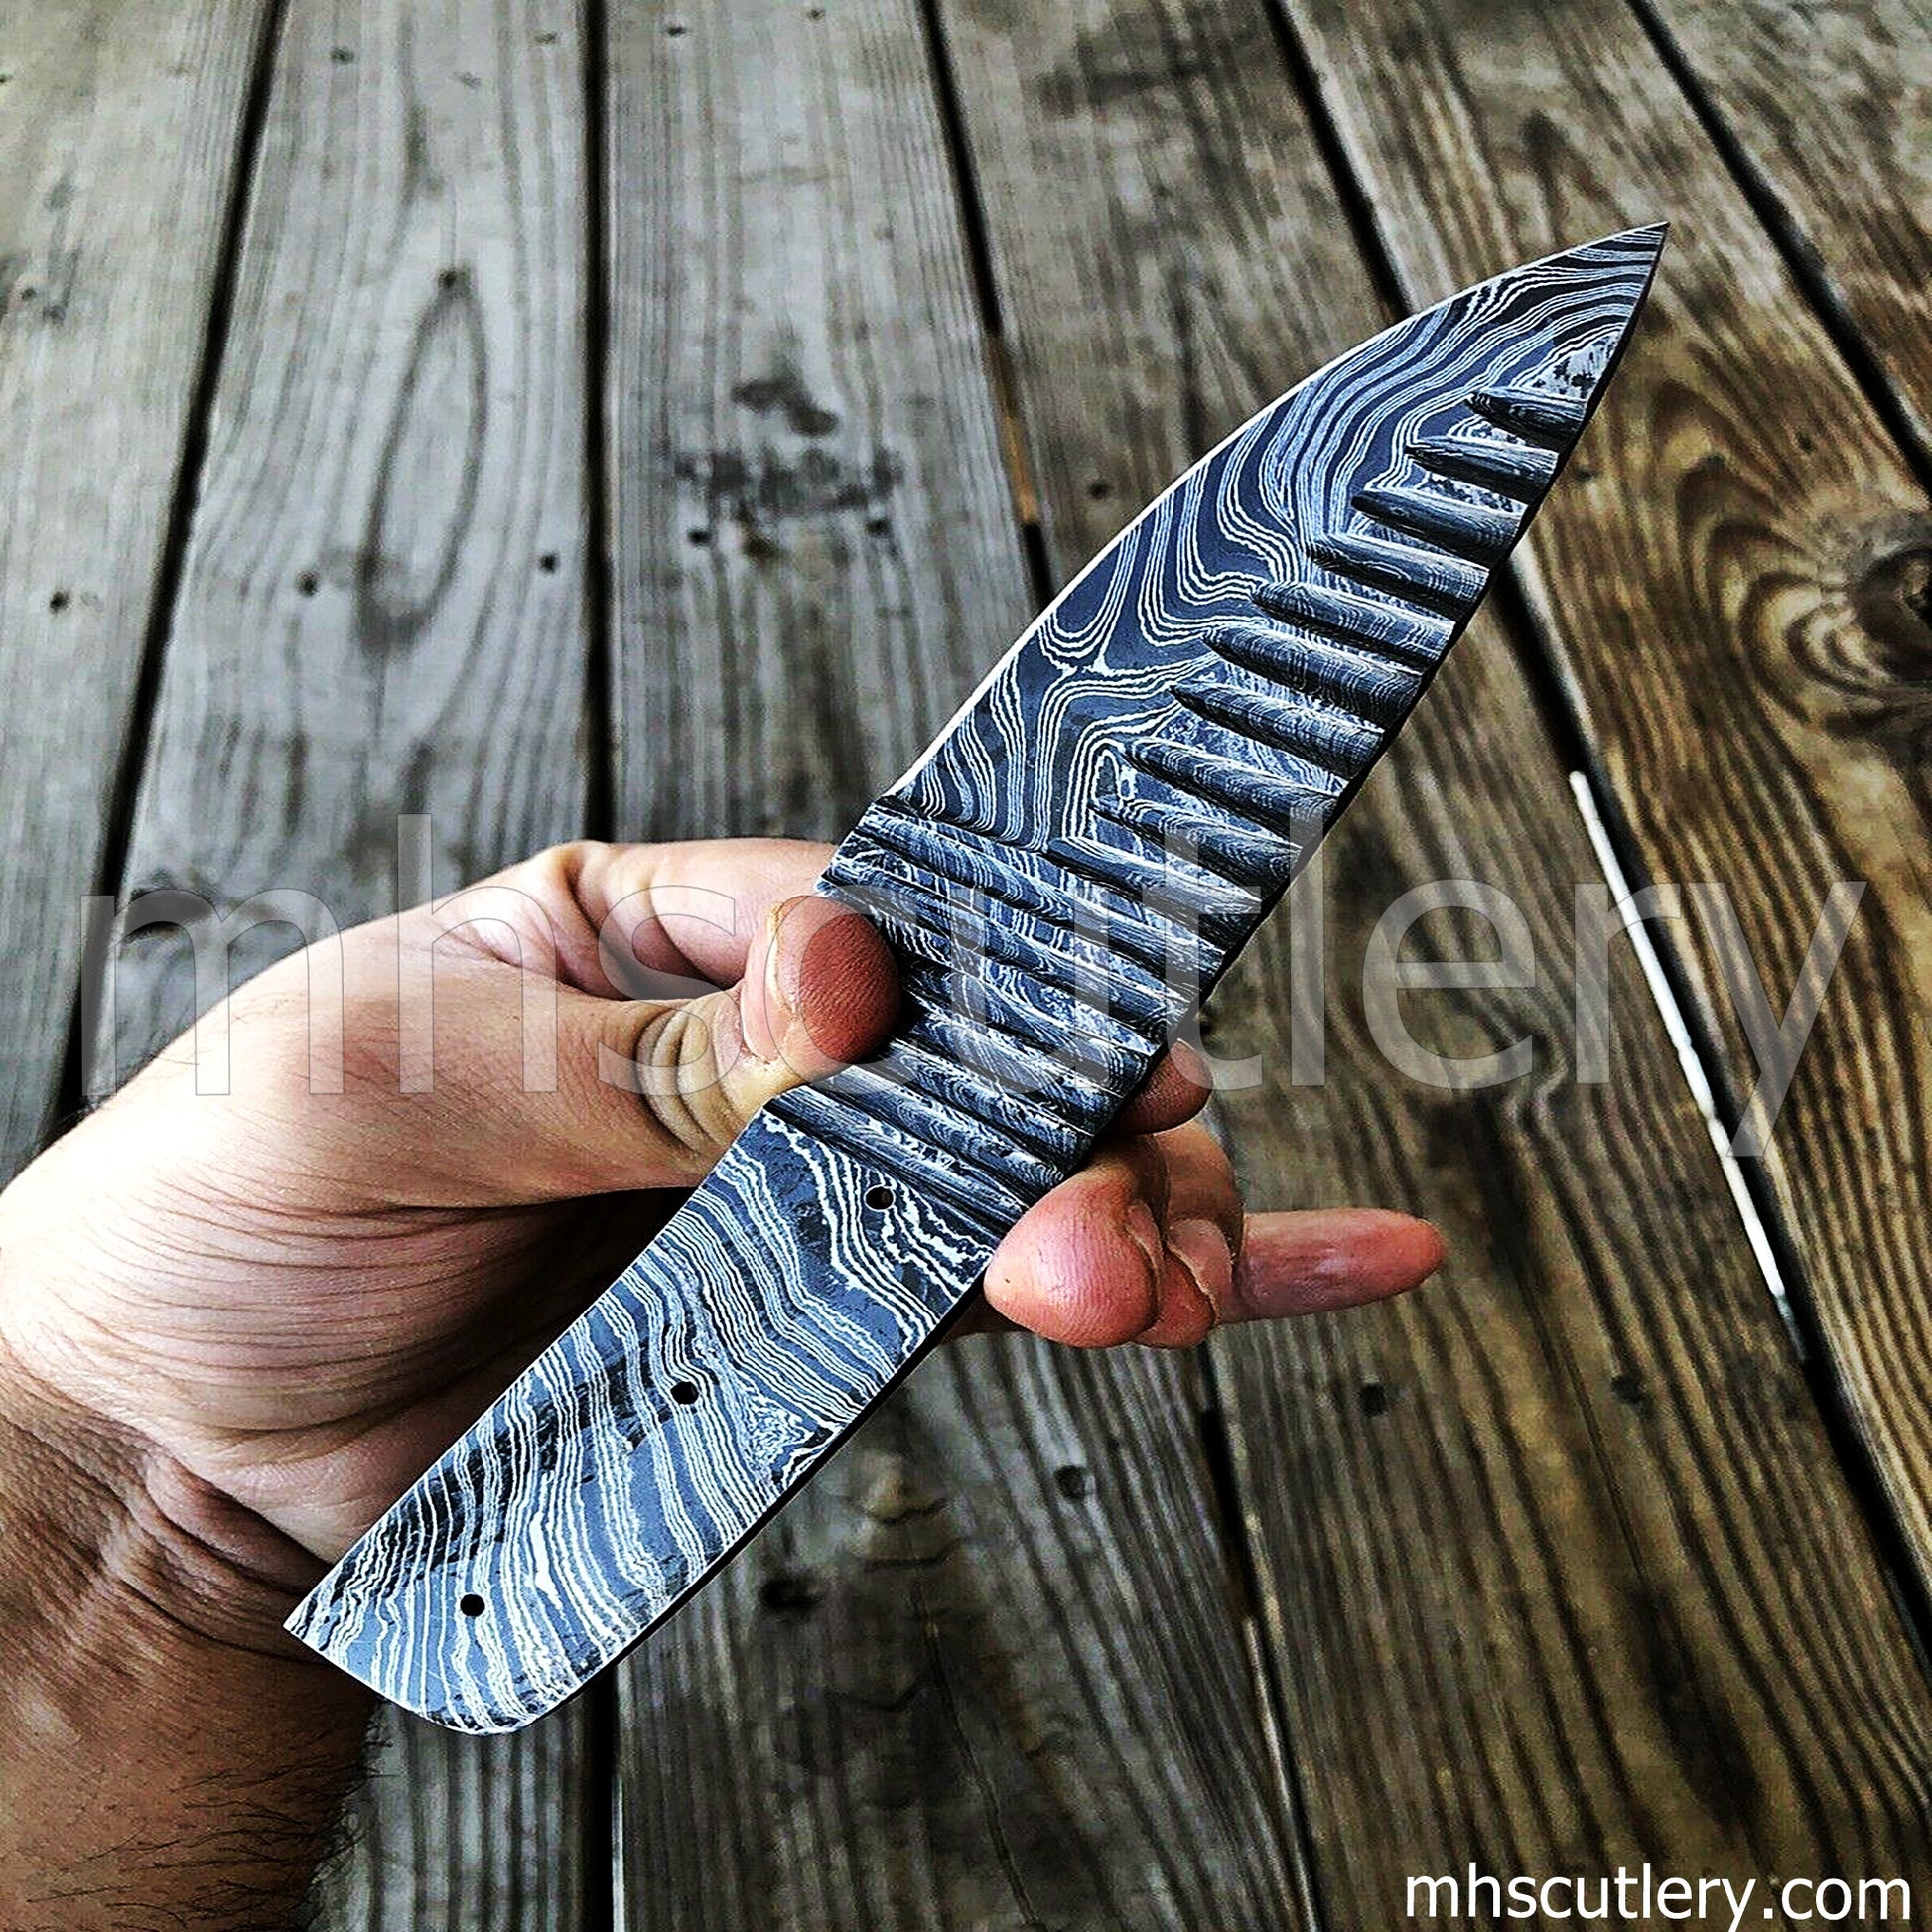 Custom Handmade Damascus Steel Hammered Blank Blade Skinner For Knife Makers | mhscutlery